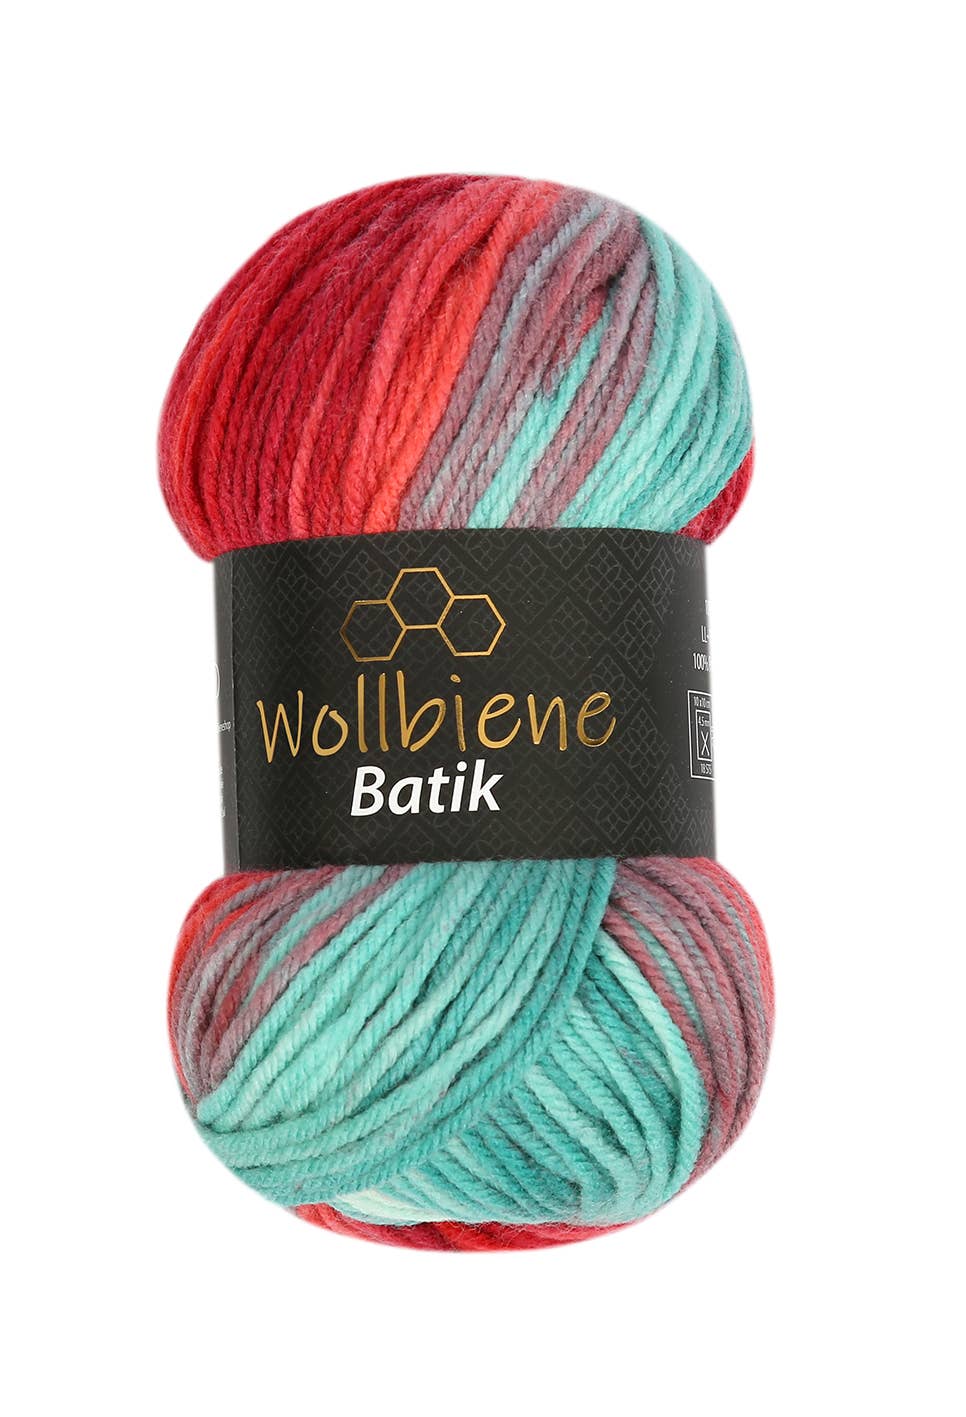 Wollbiene - Wollbiene Batik Farbverlaufswolle Strickwolle